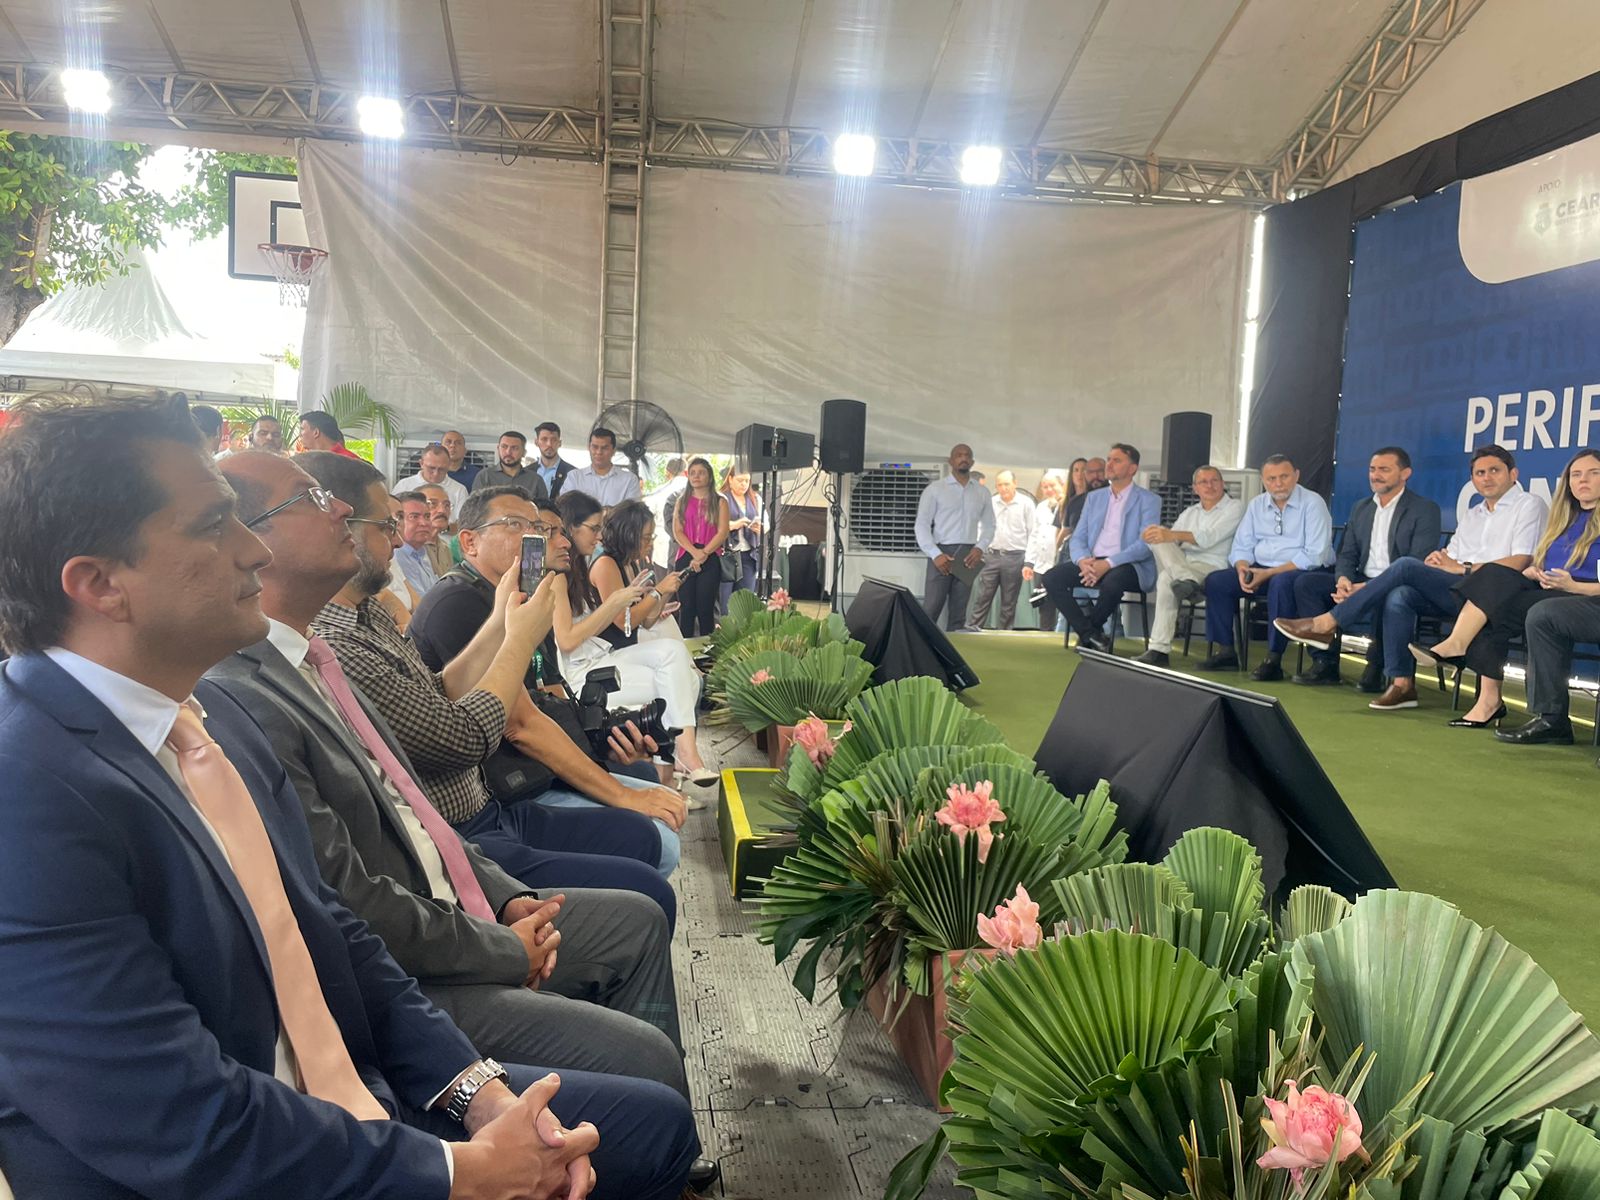 Defensoria participa de cerimônia de lançamento do  projeto “Periferias Conectadas”